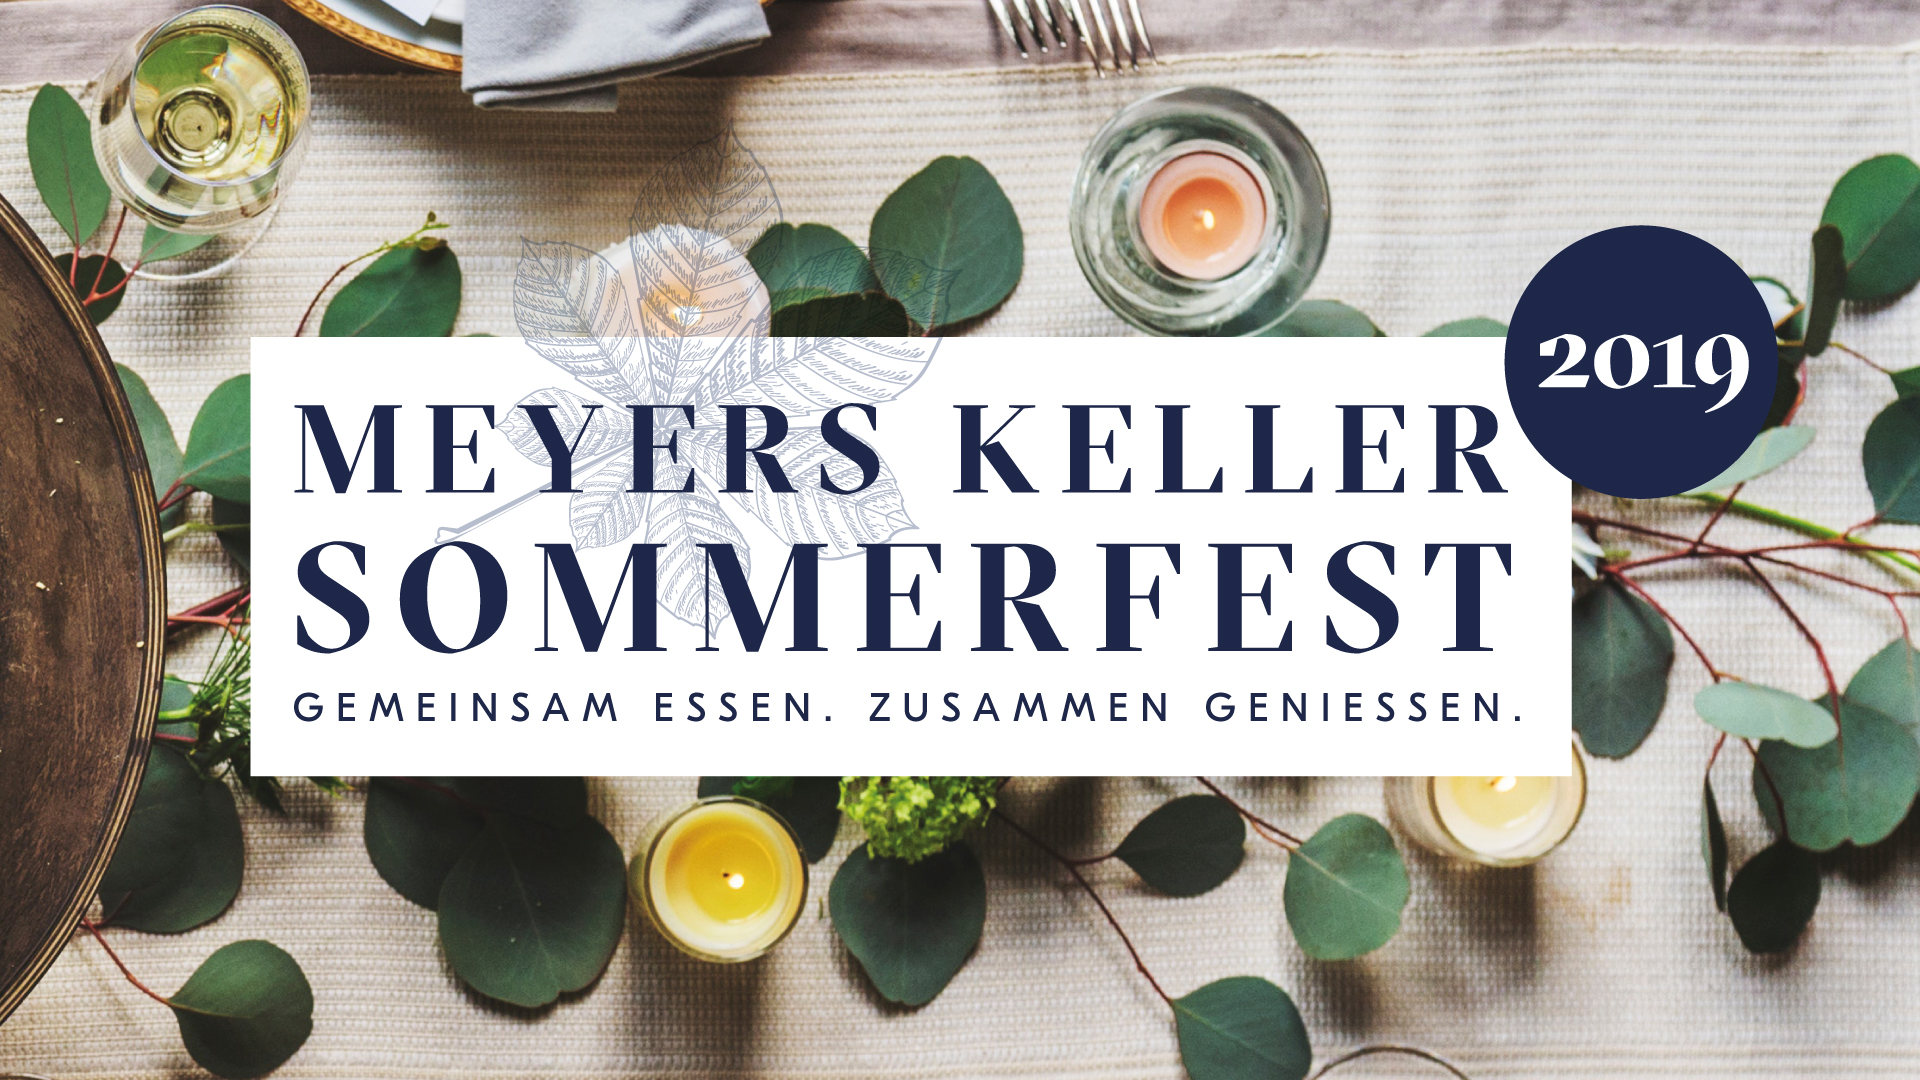 Jockl Kaiser Meyers Keller Sommerfest 2019